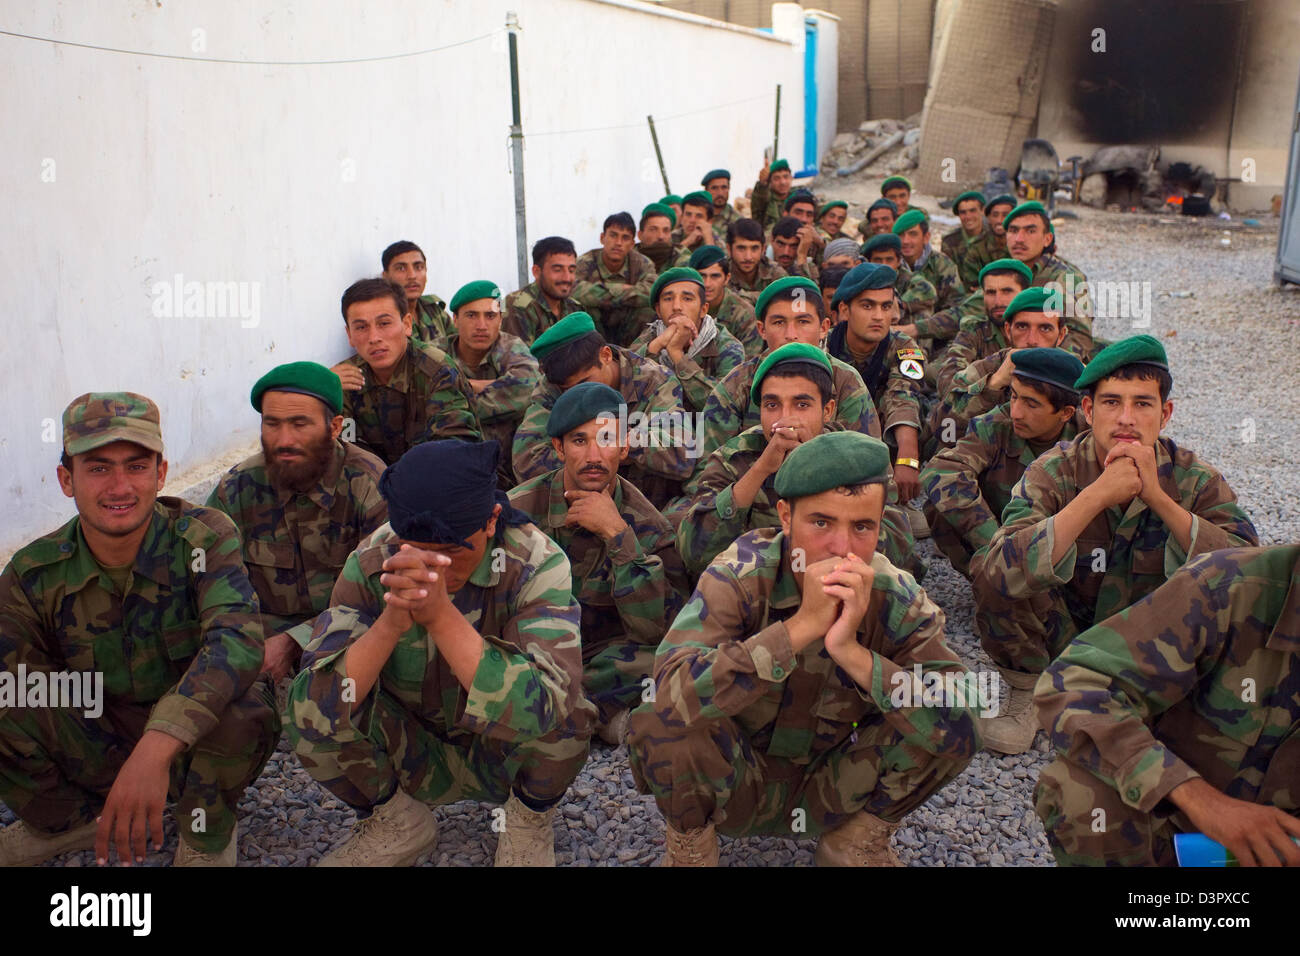 Kandahar, Afghanistan - 24. September 2010: neue afghanische Armee Soldaten warten auf eine Trainingseinheit zu beginnen. Stockfoto